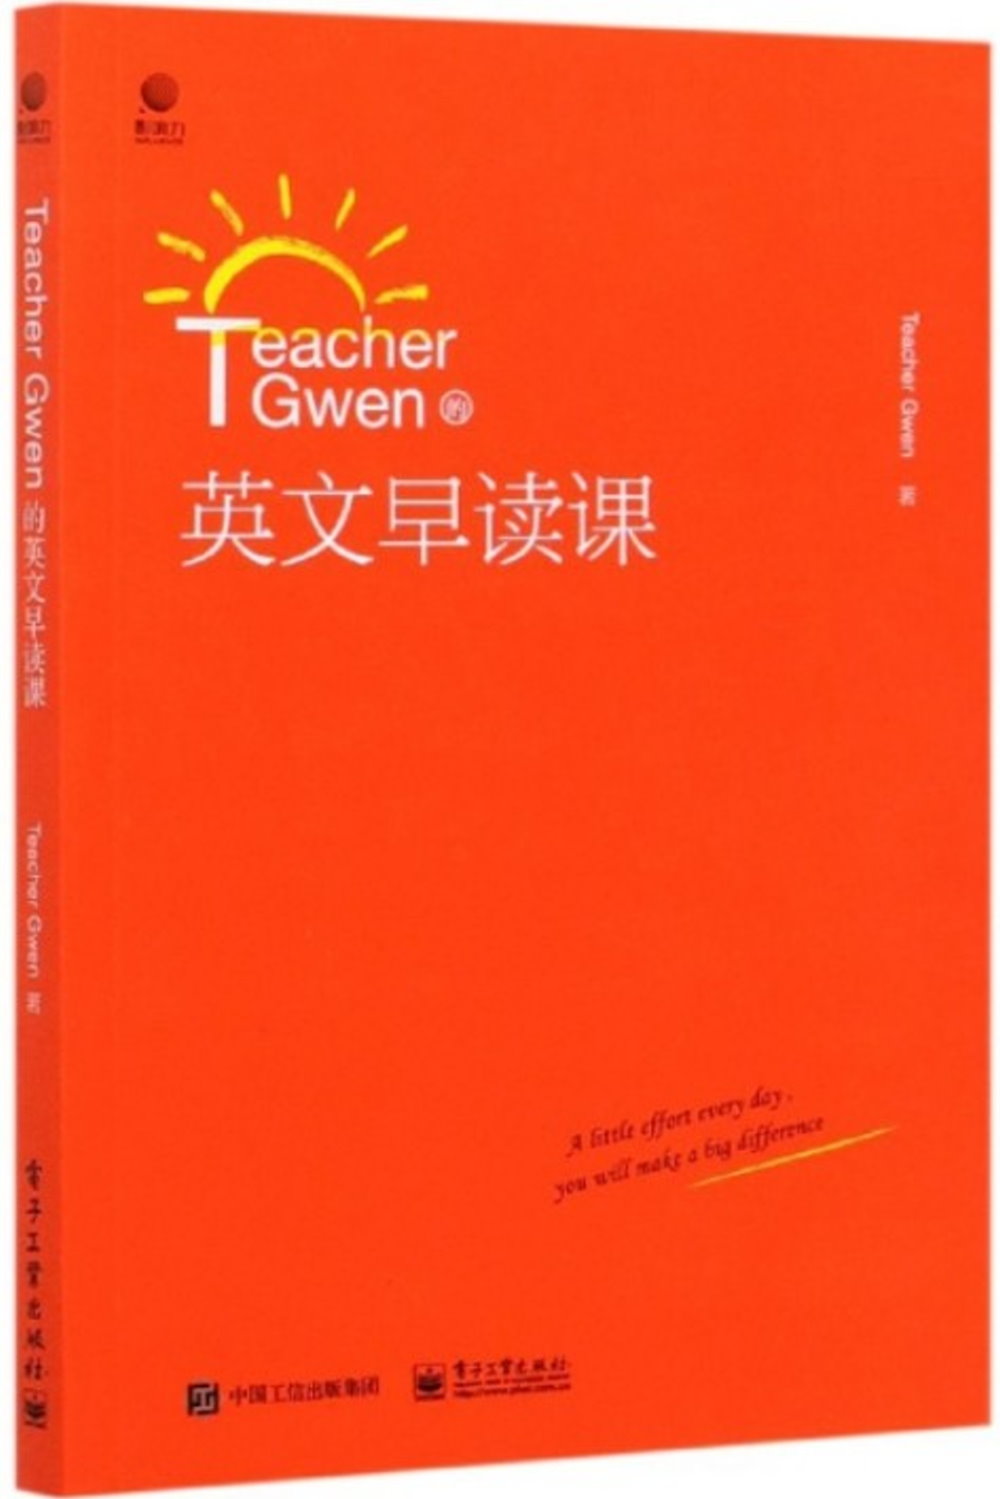 Teacher Gwen的英文早讀課